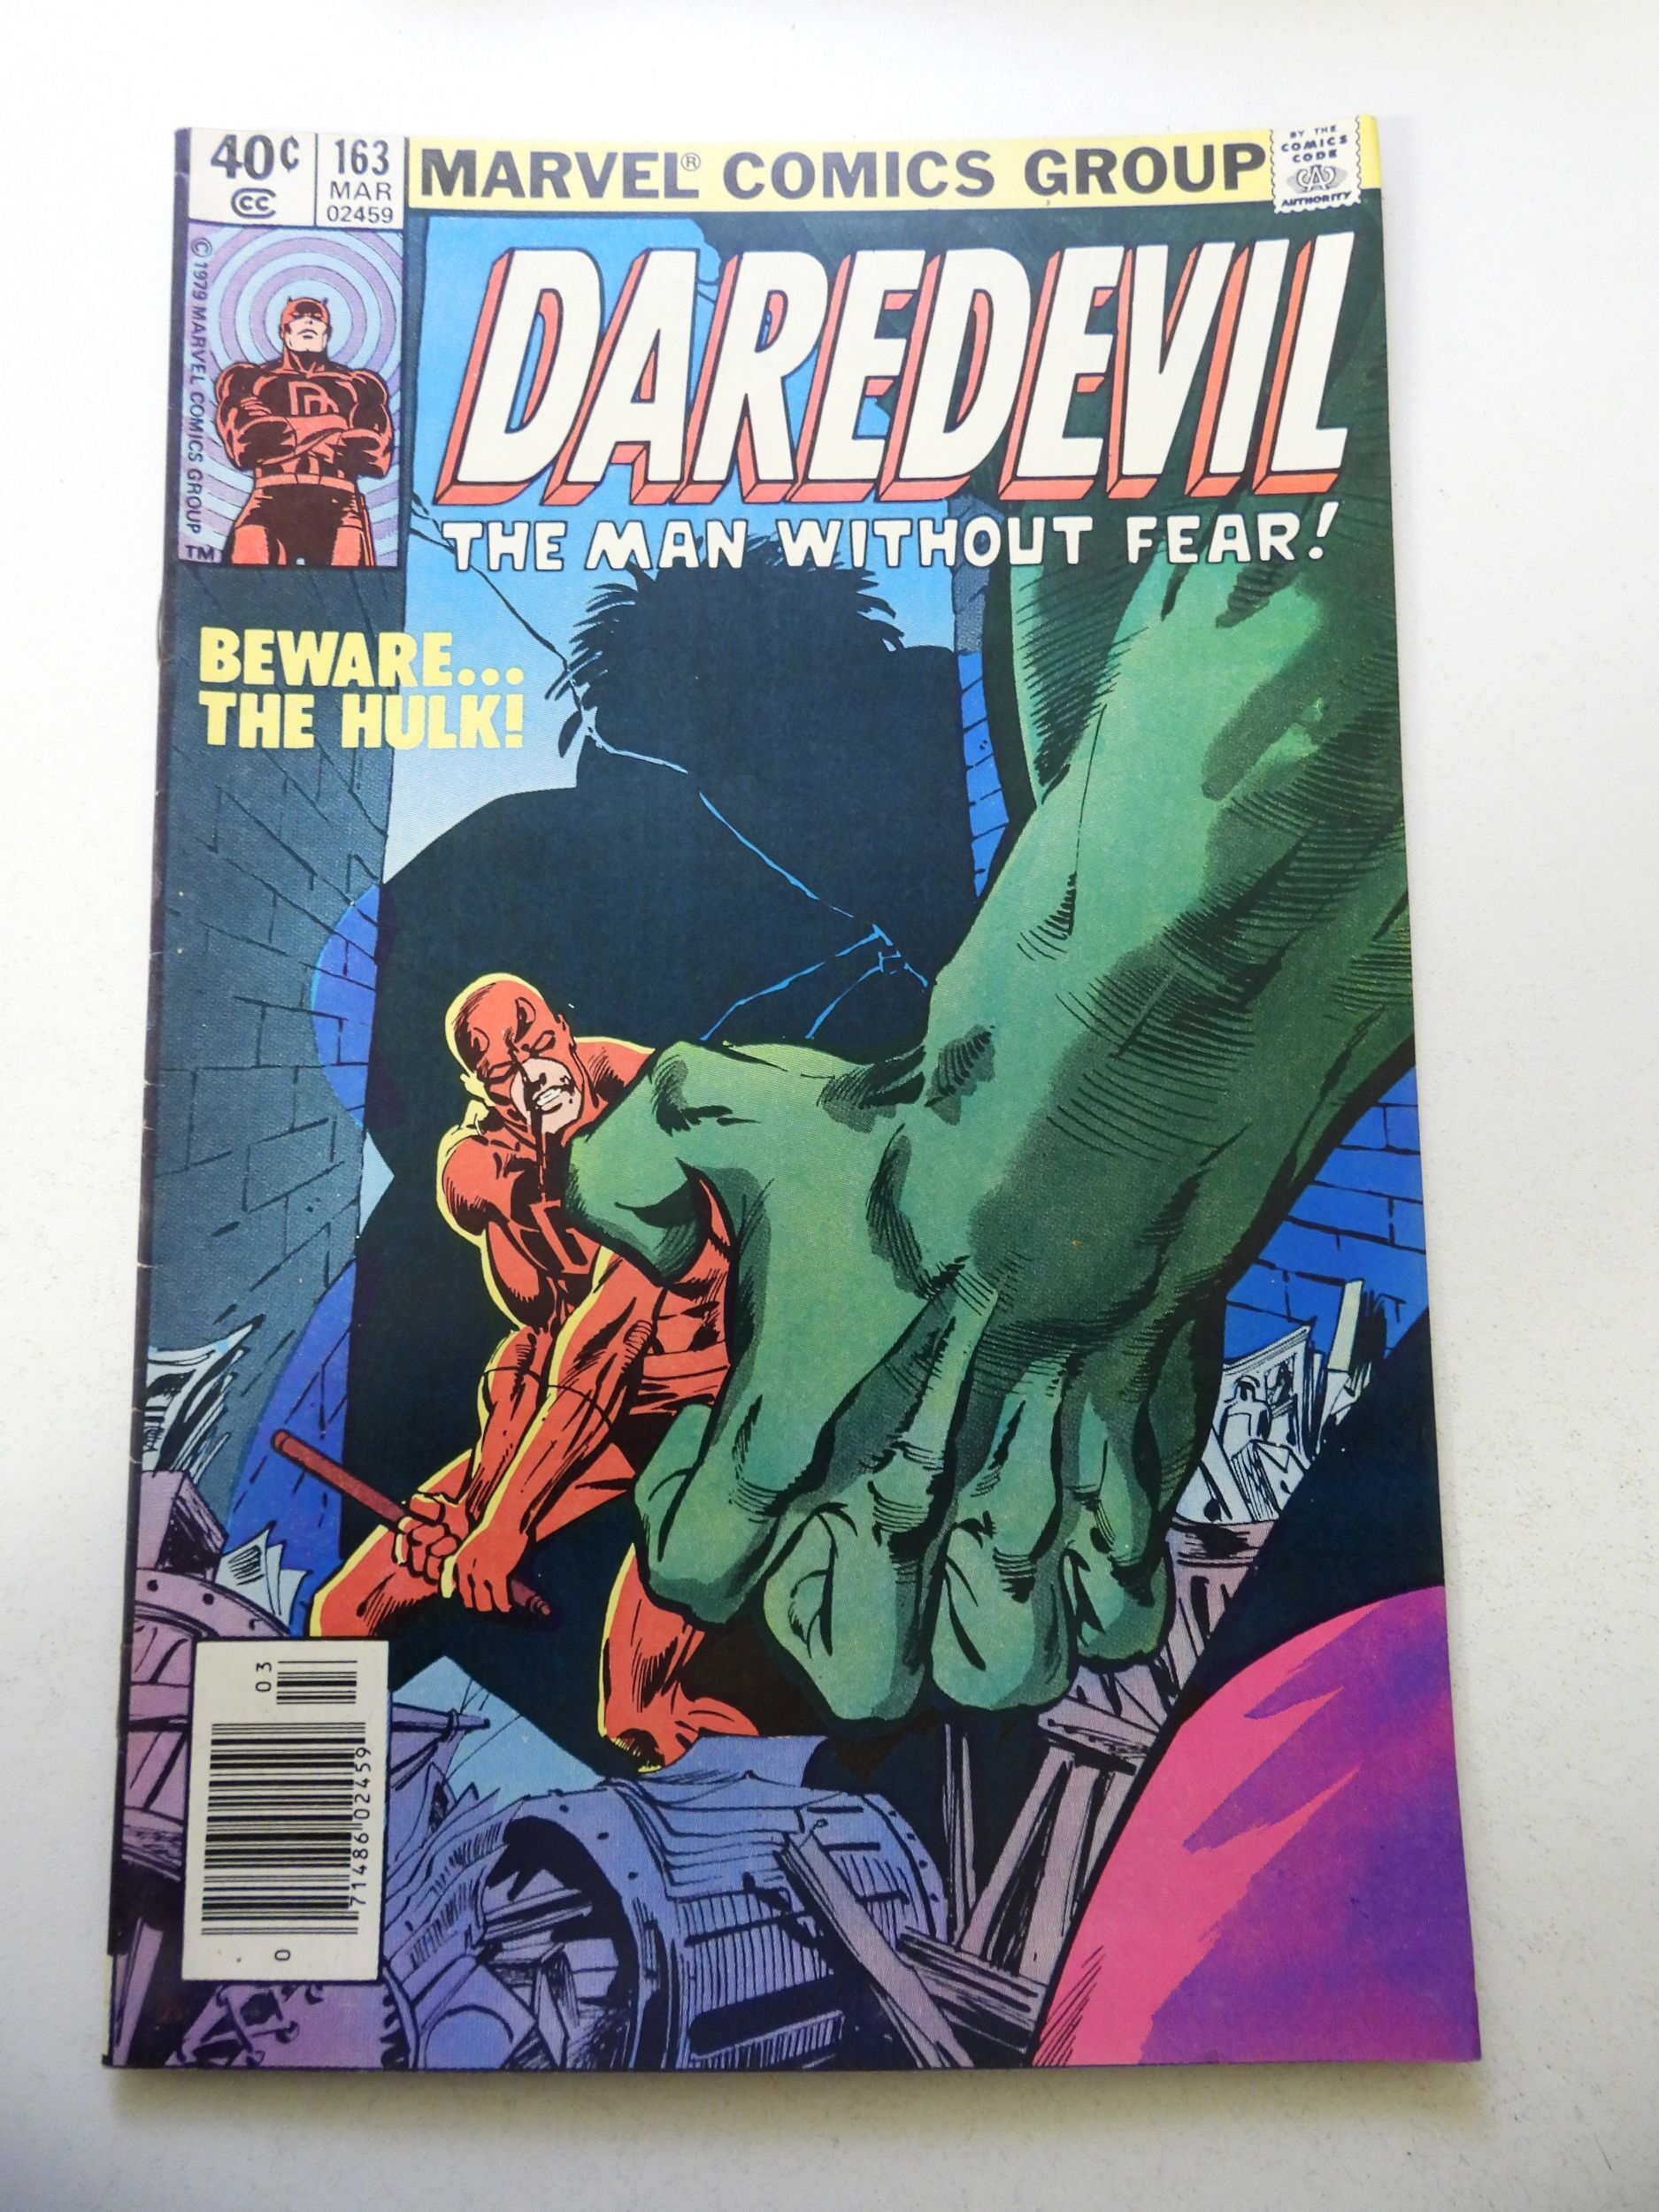 Daredevil #163 (1980) FN+ Condition | Comic Books - Bronze Age, Marvel ...